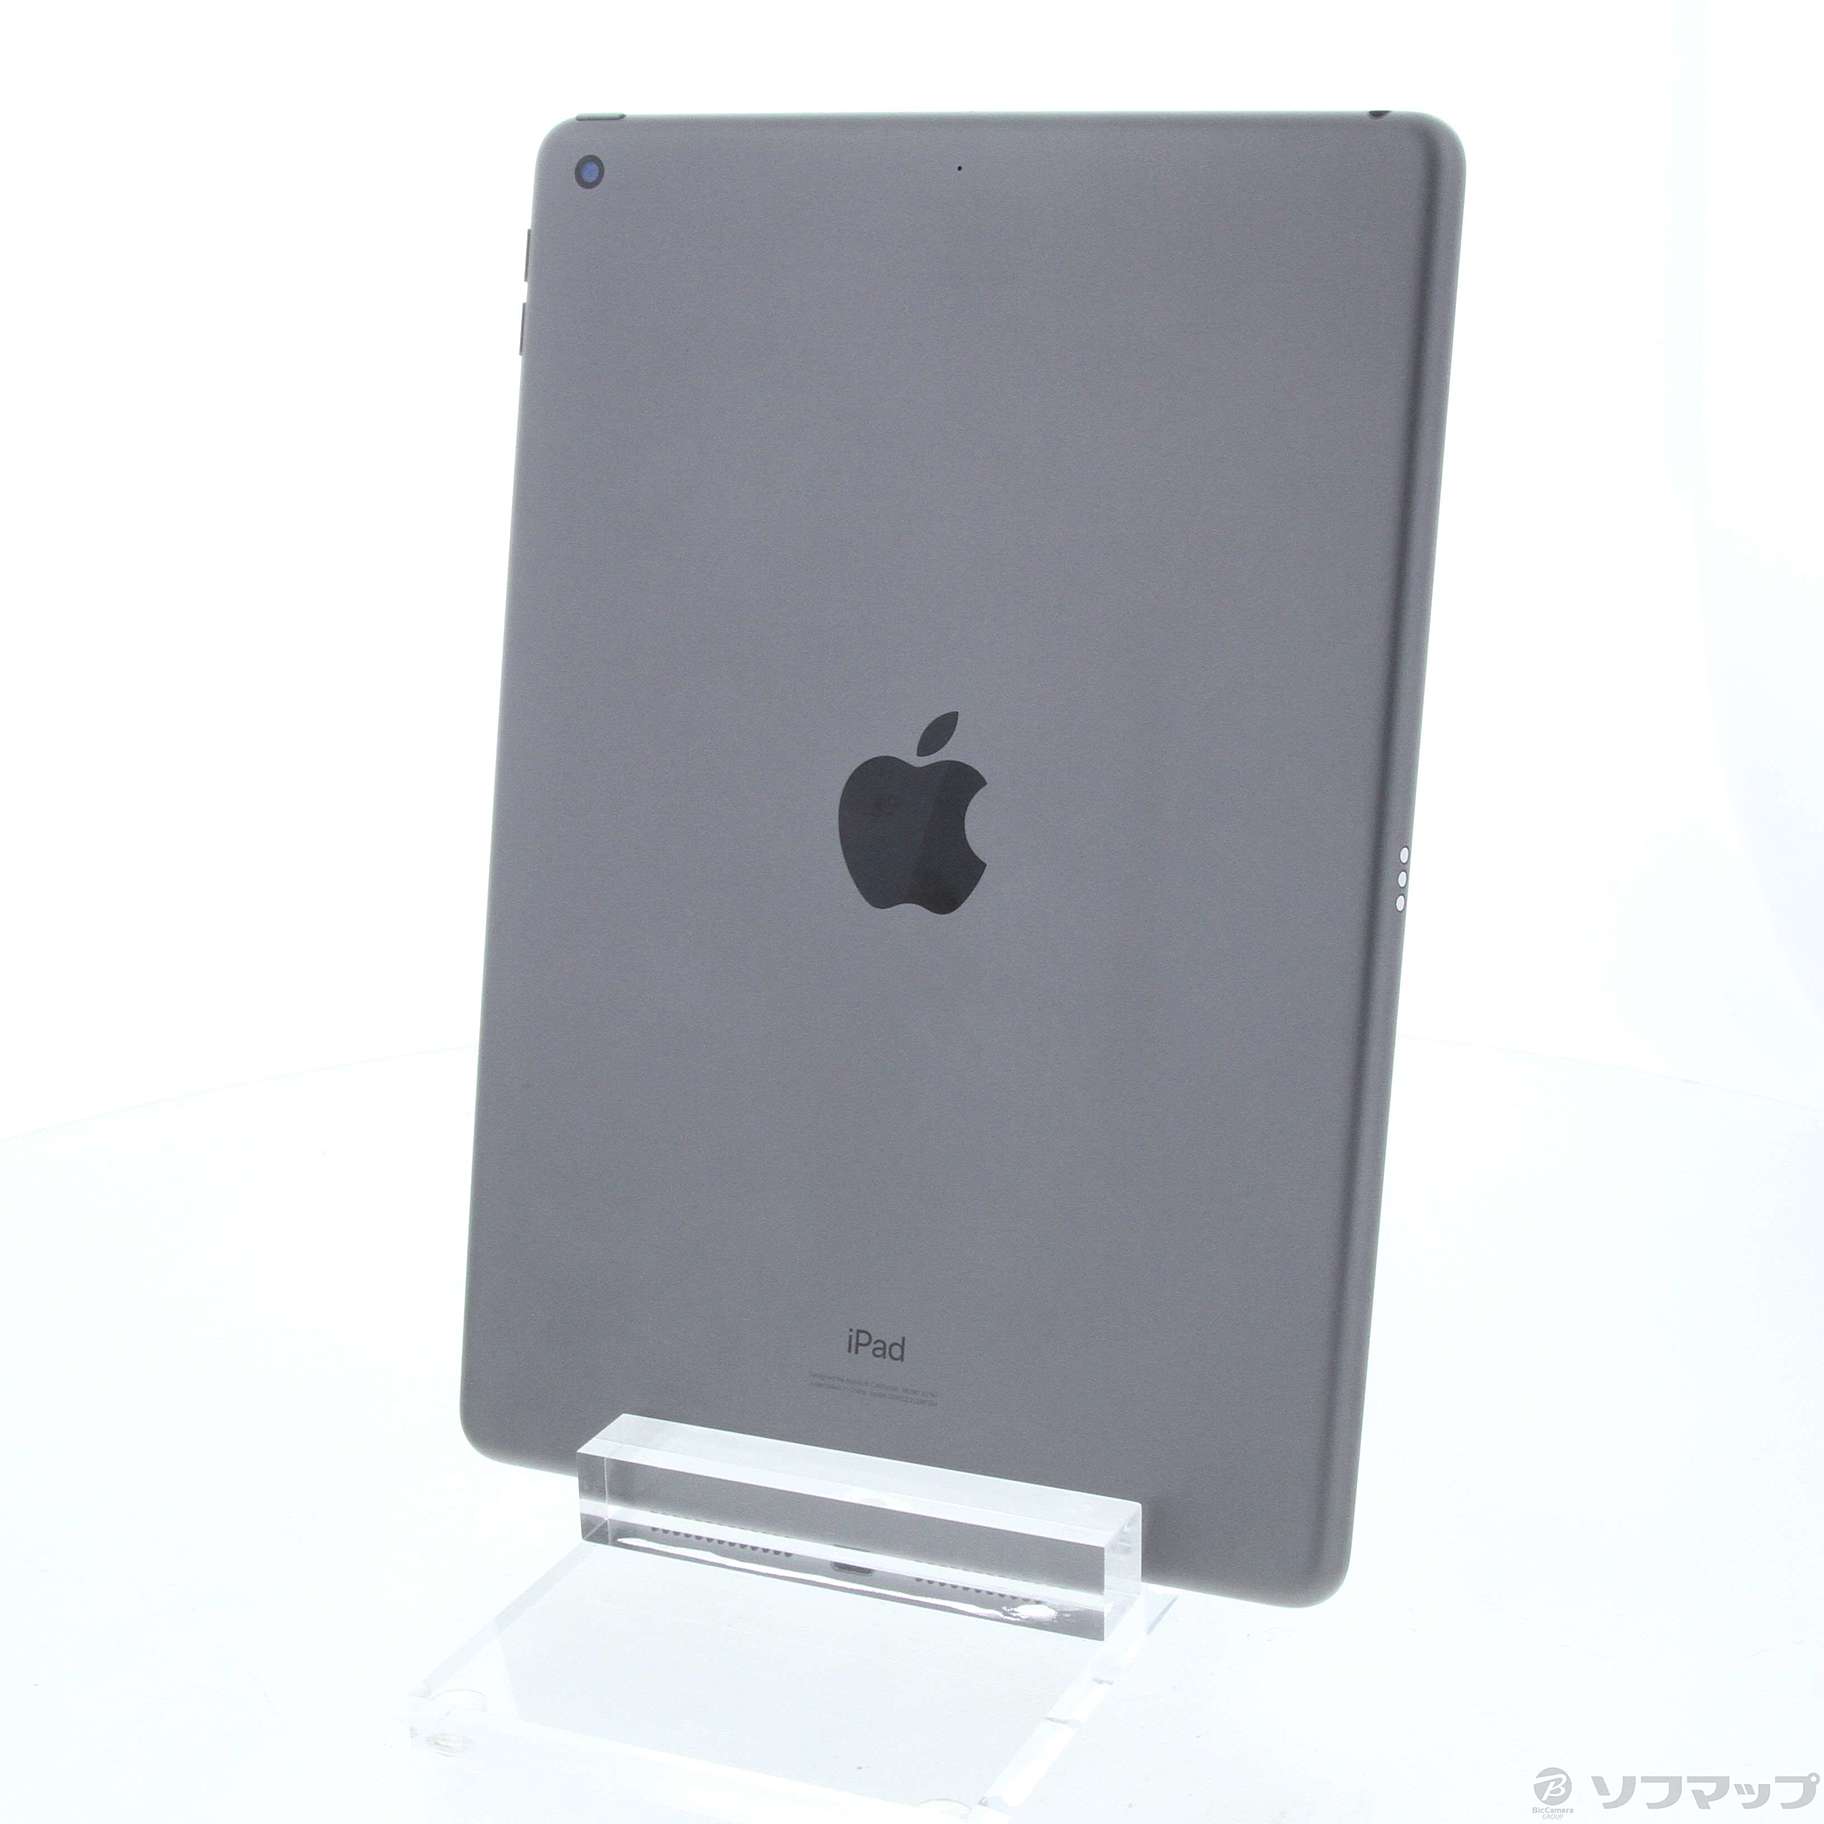 【スマホ】 Apple iPad 第7世代32GB MW742J/A [スペースグレイ]の通販 by utti129's shop｜ラクマ